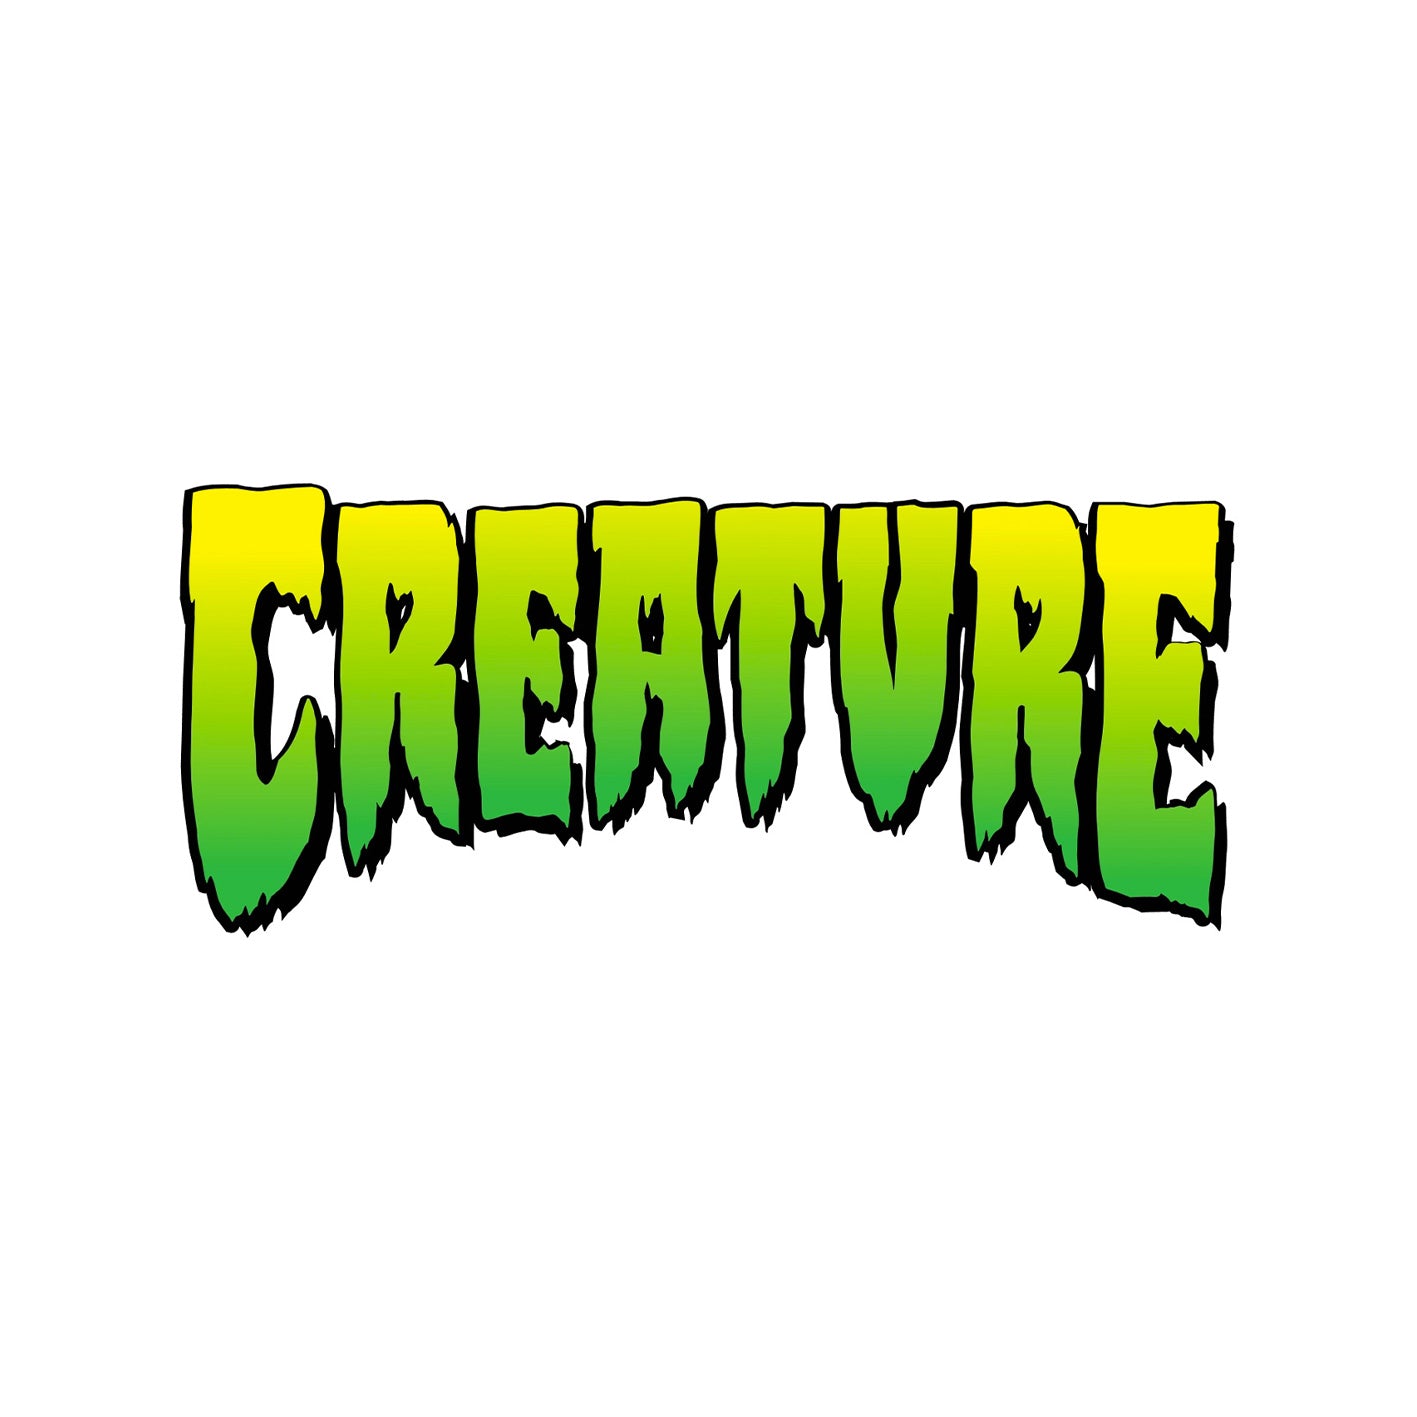 Creature skateboards